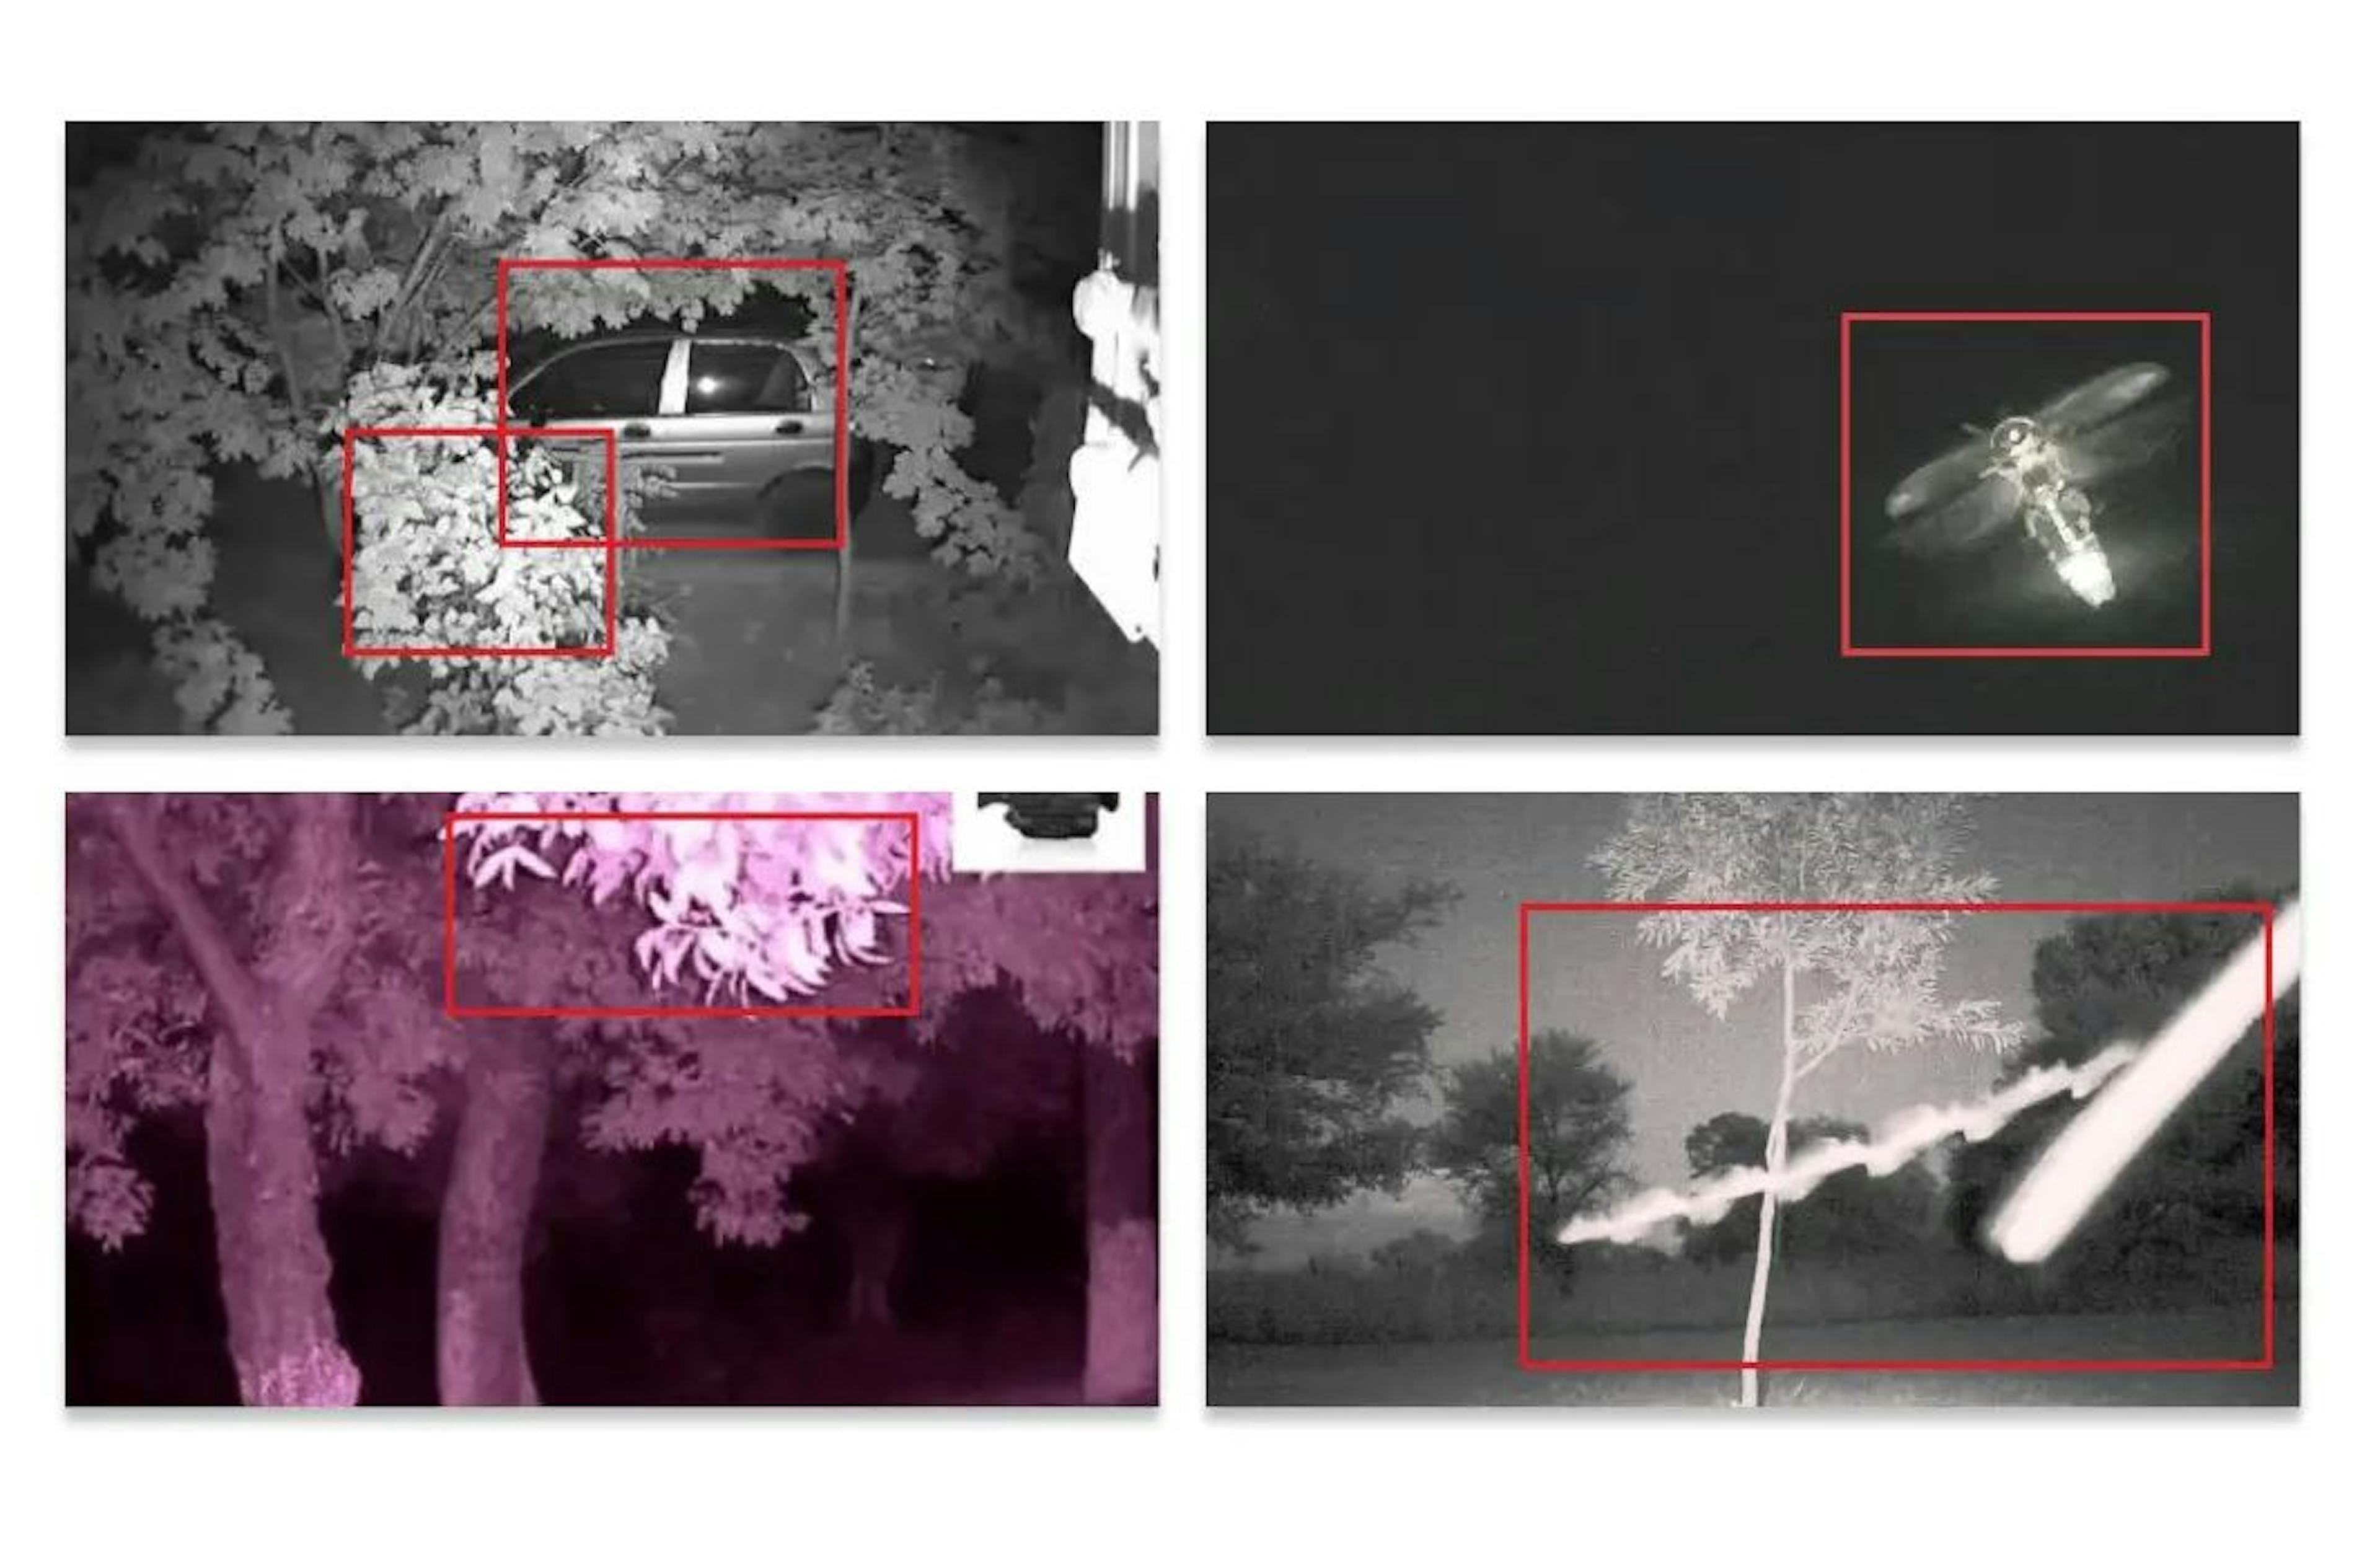 Pendant la nuit, le modèle détecterait les branches d'arbres ou les insectes comme des oiseaux.